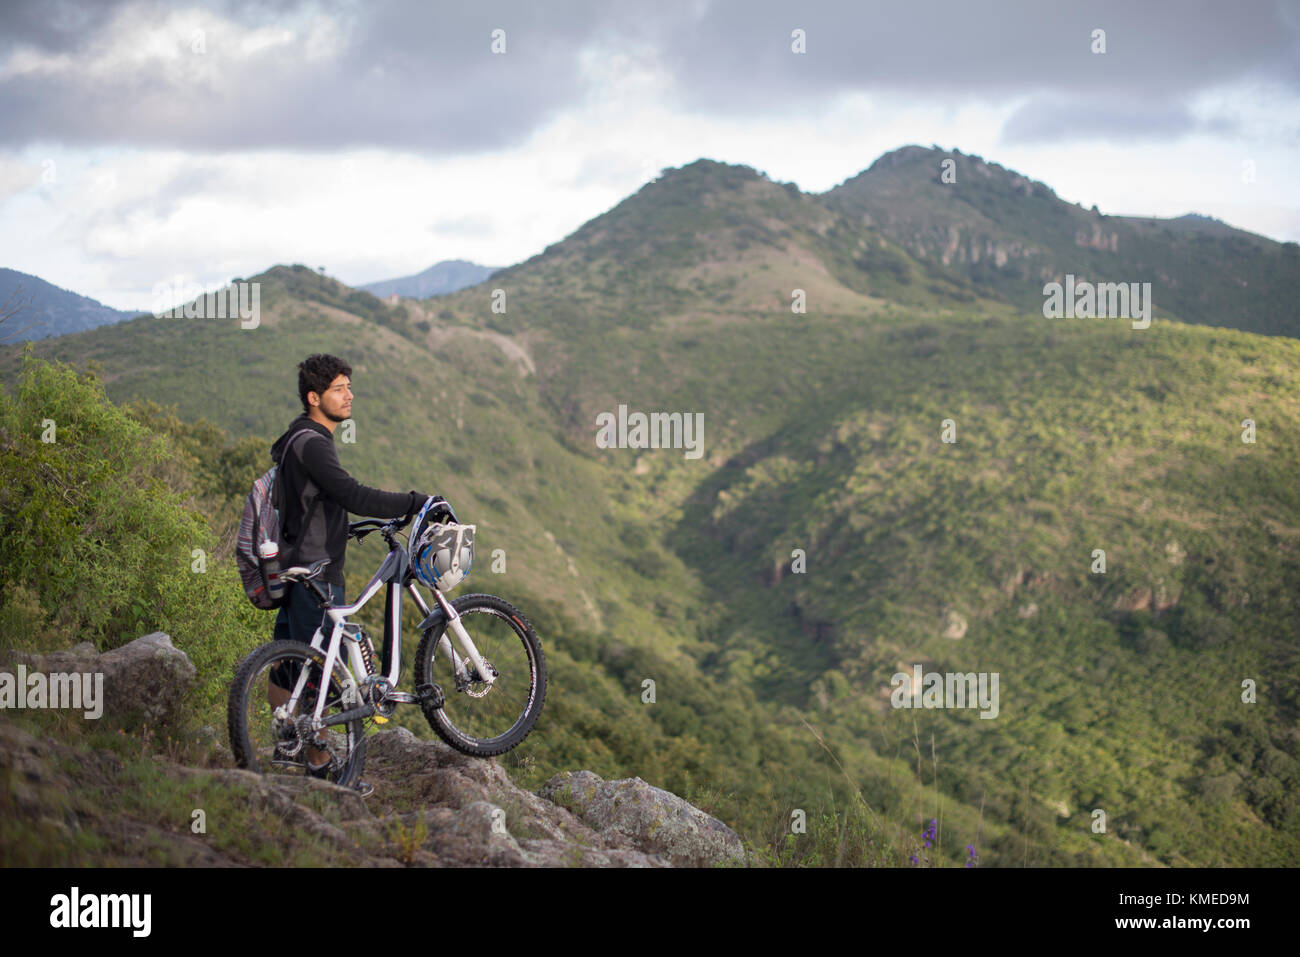 Un vélo de montagne avec son vélo stears au paysage au cours d'un voyage dans la région de Joya Barreta de Queretaro, Mexique. Banque D'Images